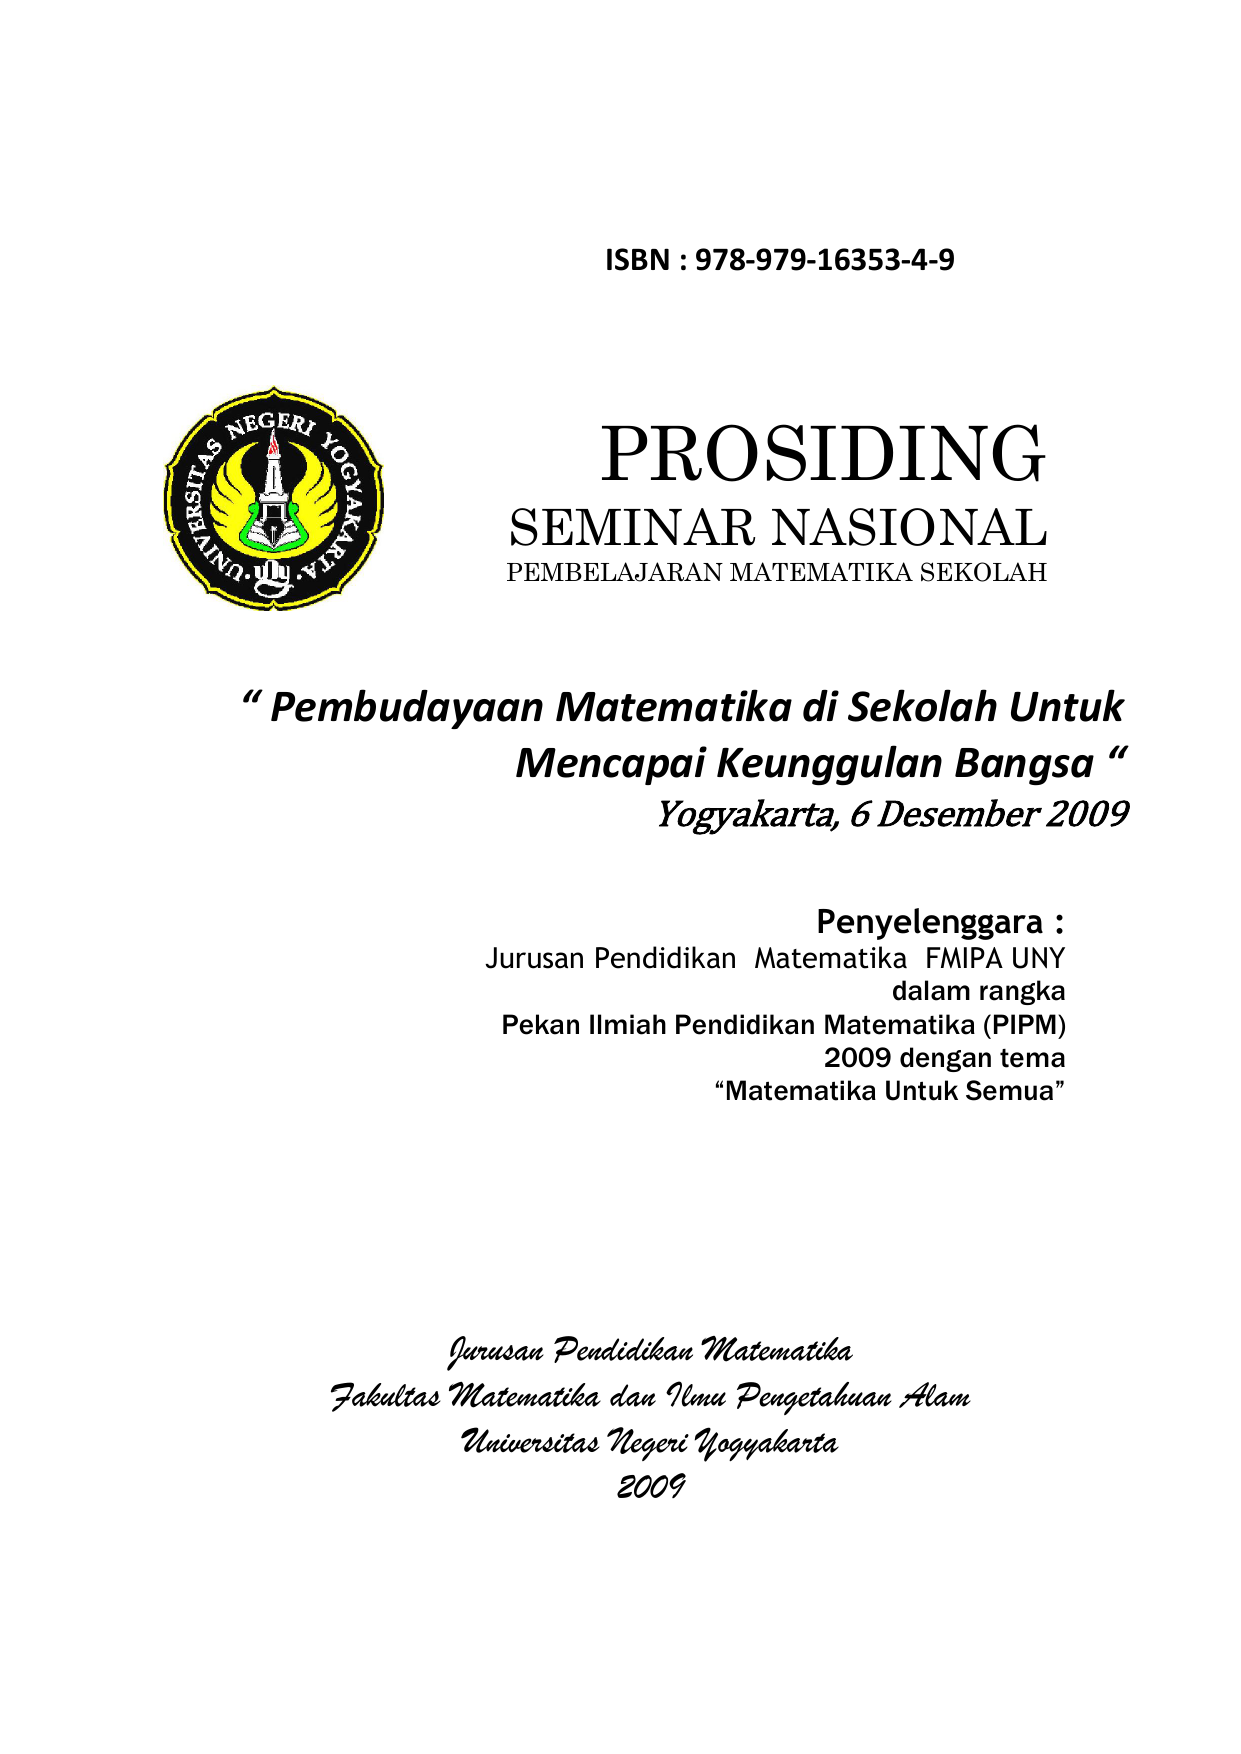 Matematika di Sekolah Untuk Mencapai Keunggulan Bangsa “ Yogyakarta 6 Desember 2009 Penyelenggara Jurusan Pendidikan Matematika FMIPA UNY dalam